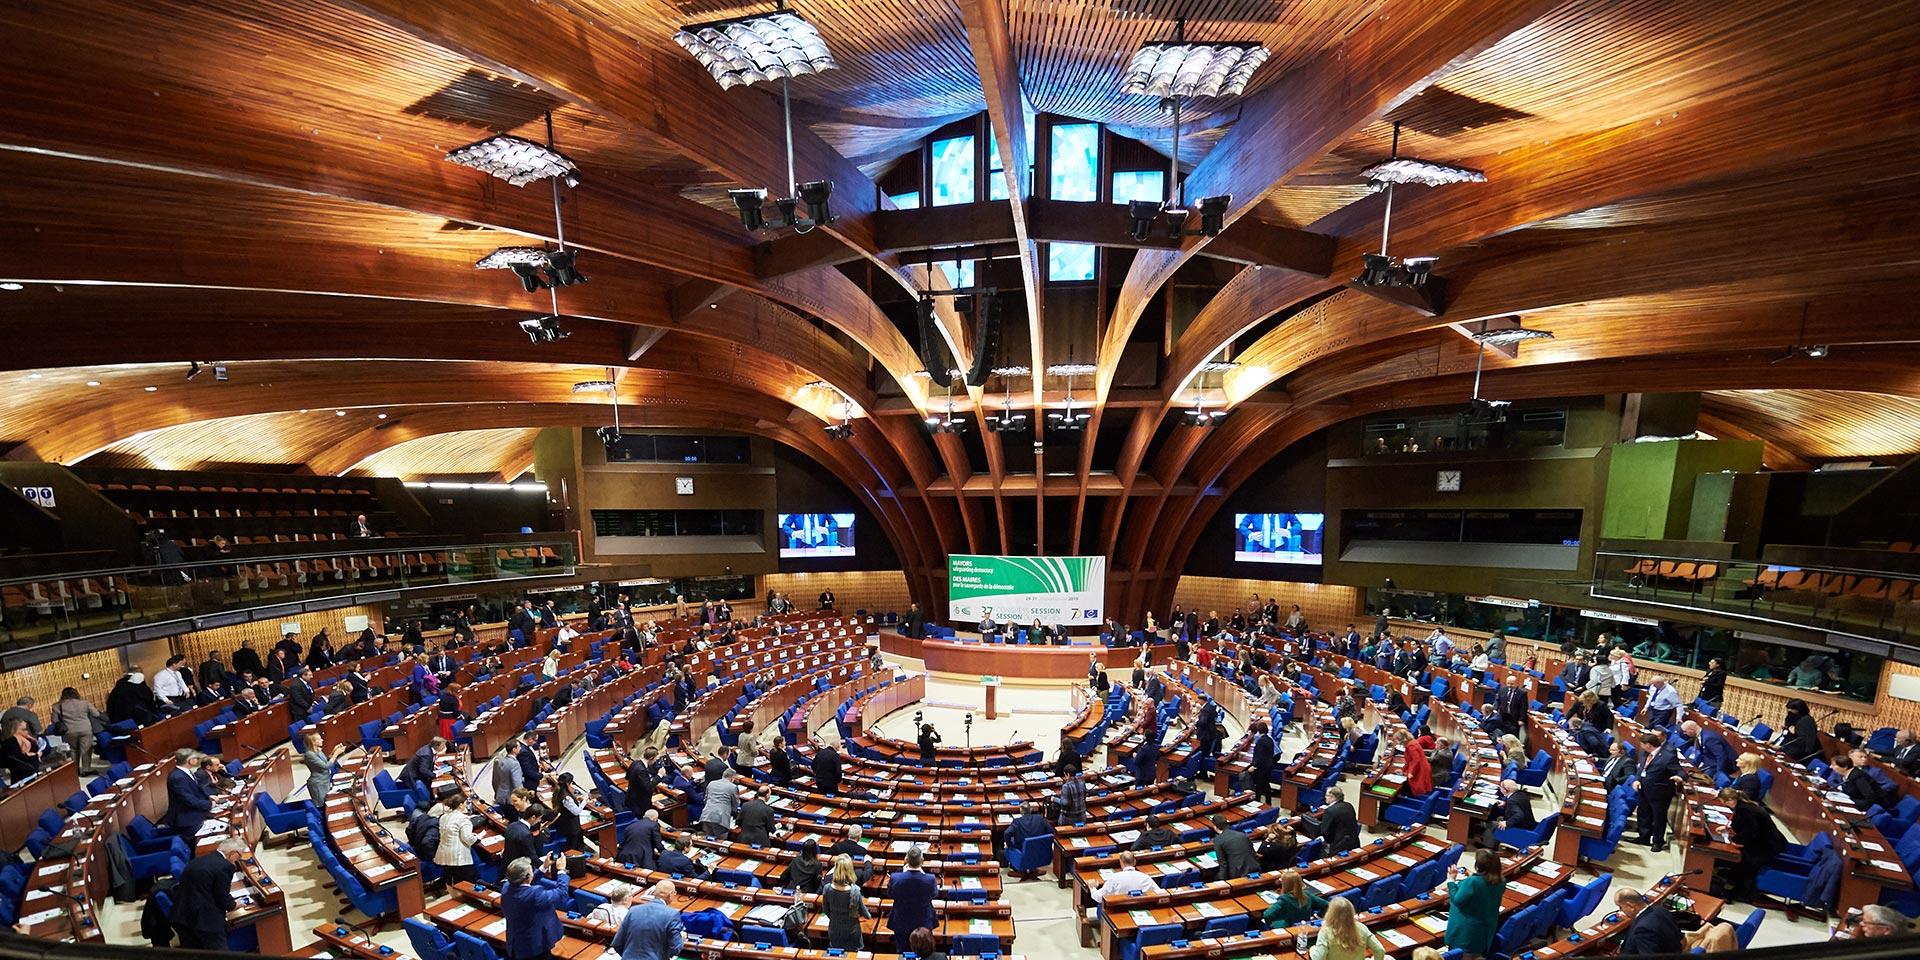  Blick in den Plenarsaal des Palais de l’Europe in Strassburg, dem Sitz des Kongresses der Gemeinden und Regionen Europas.